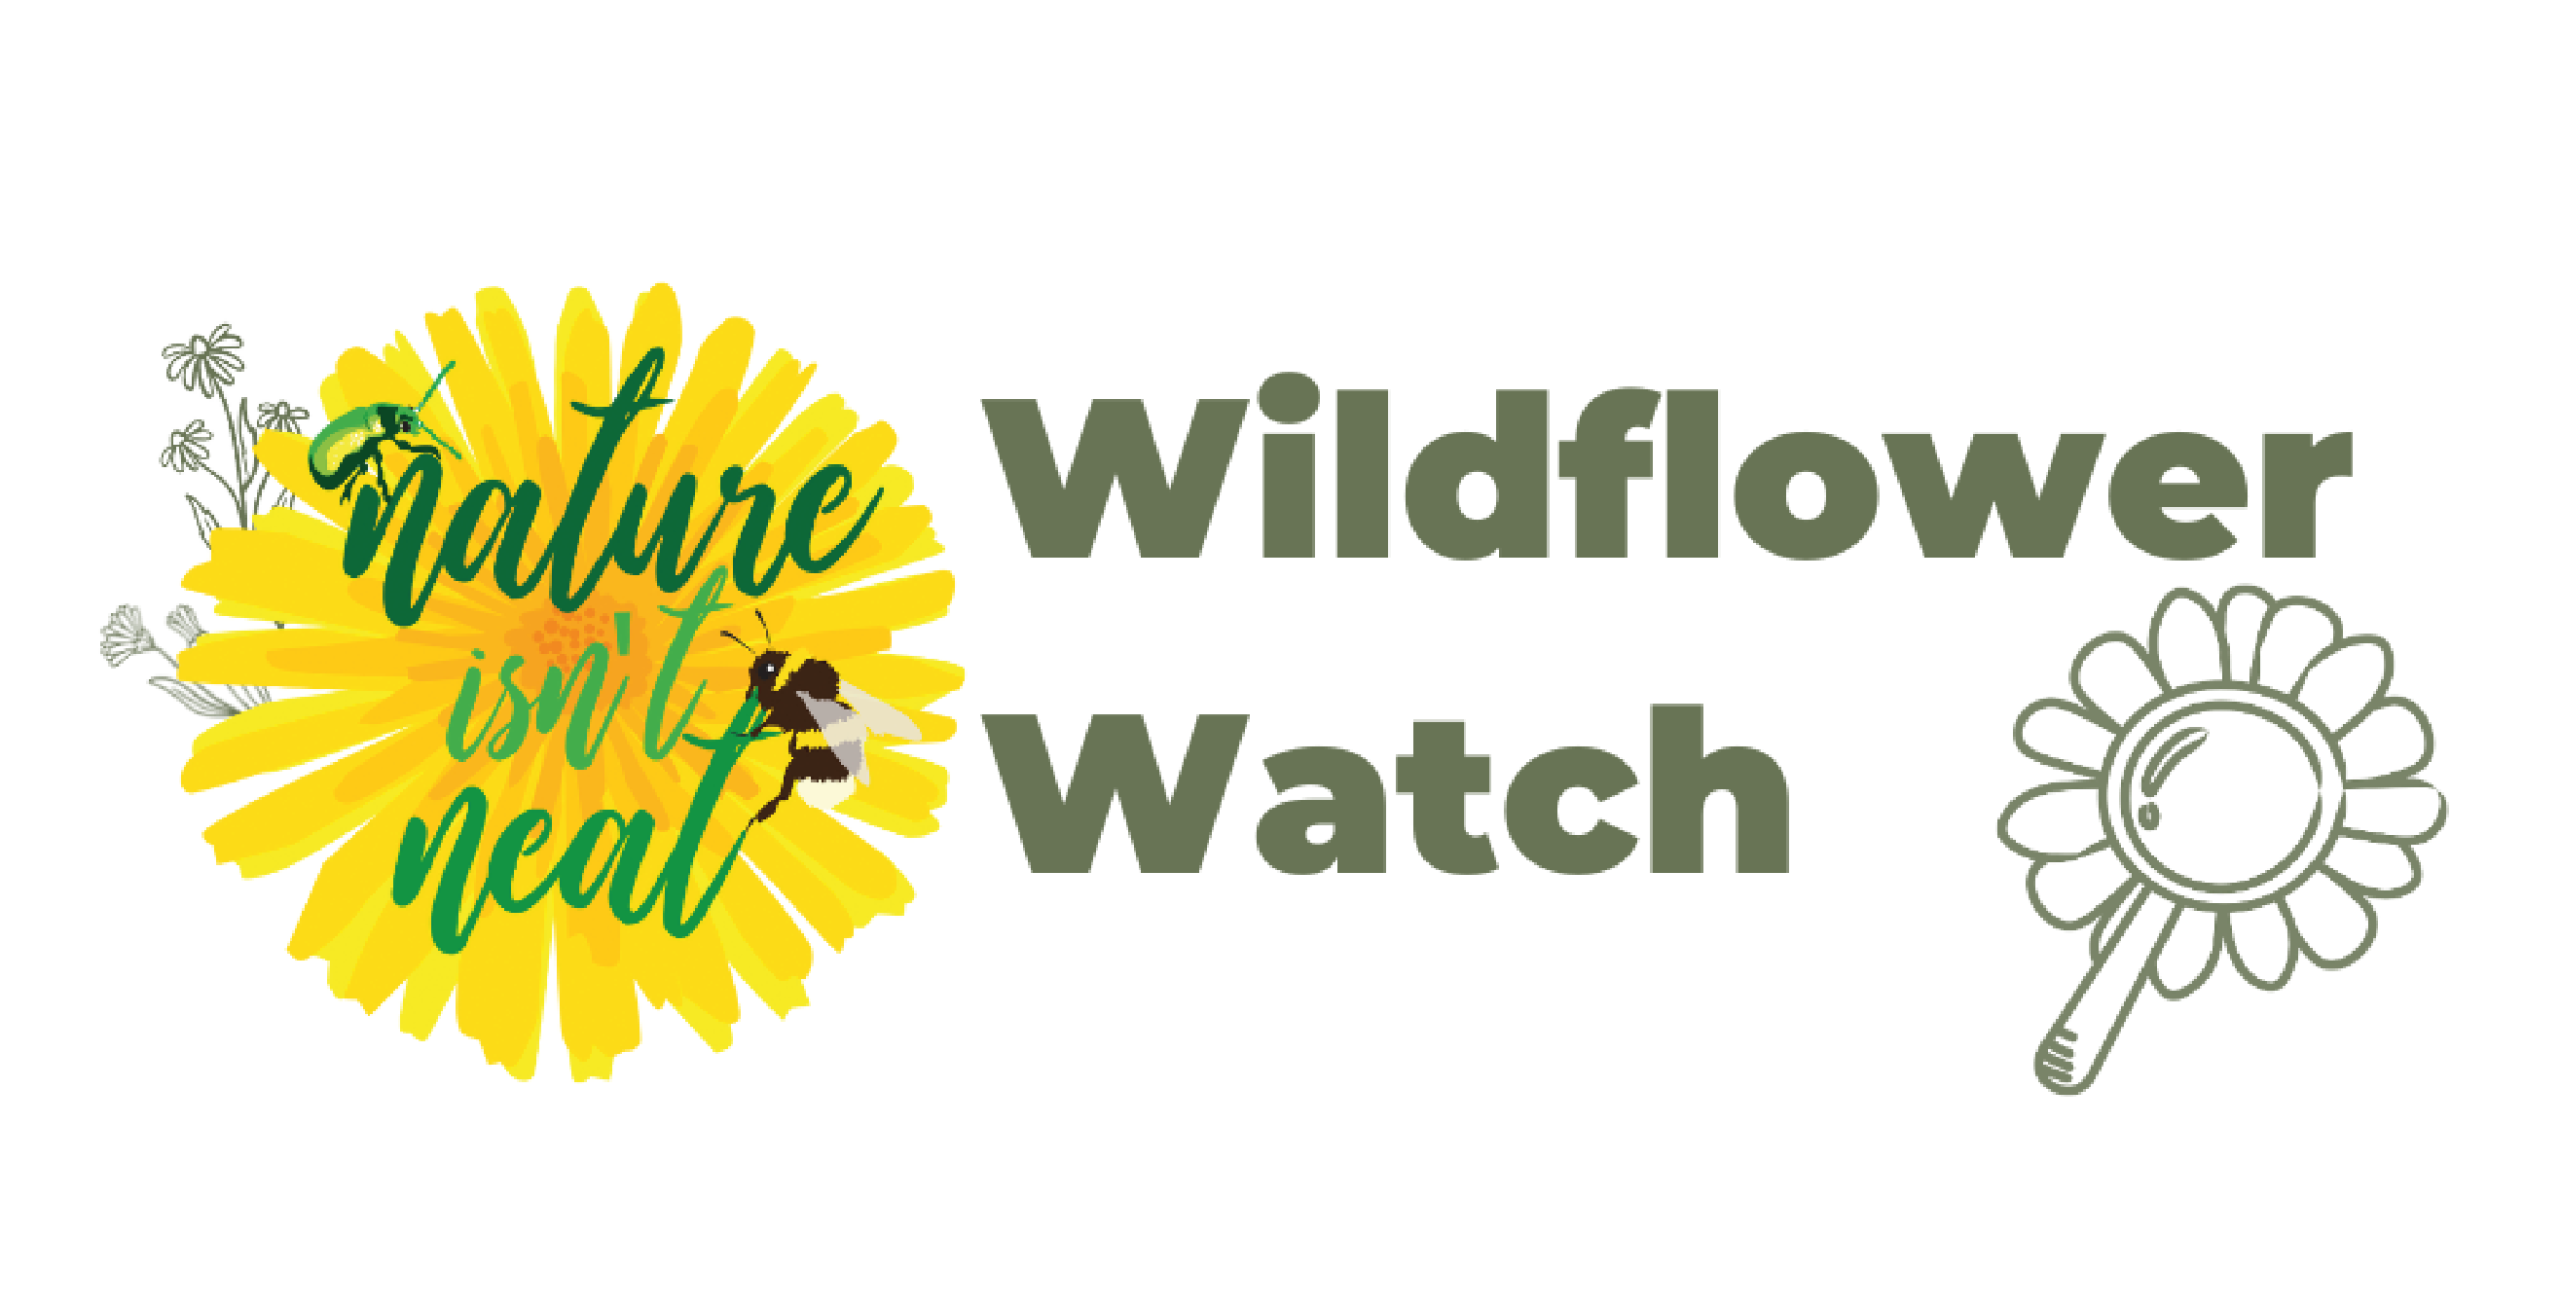 Wildflower Watch